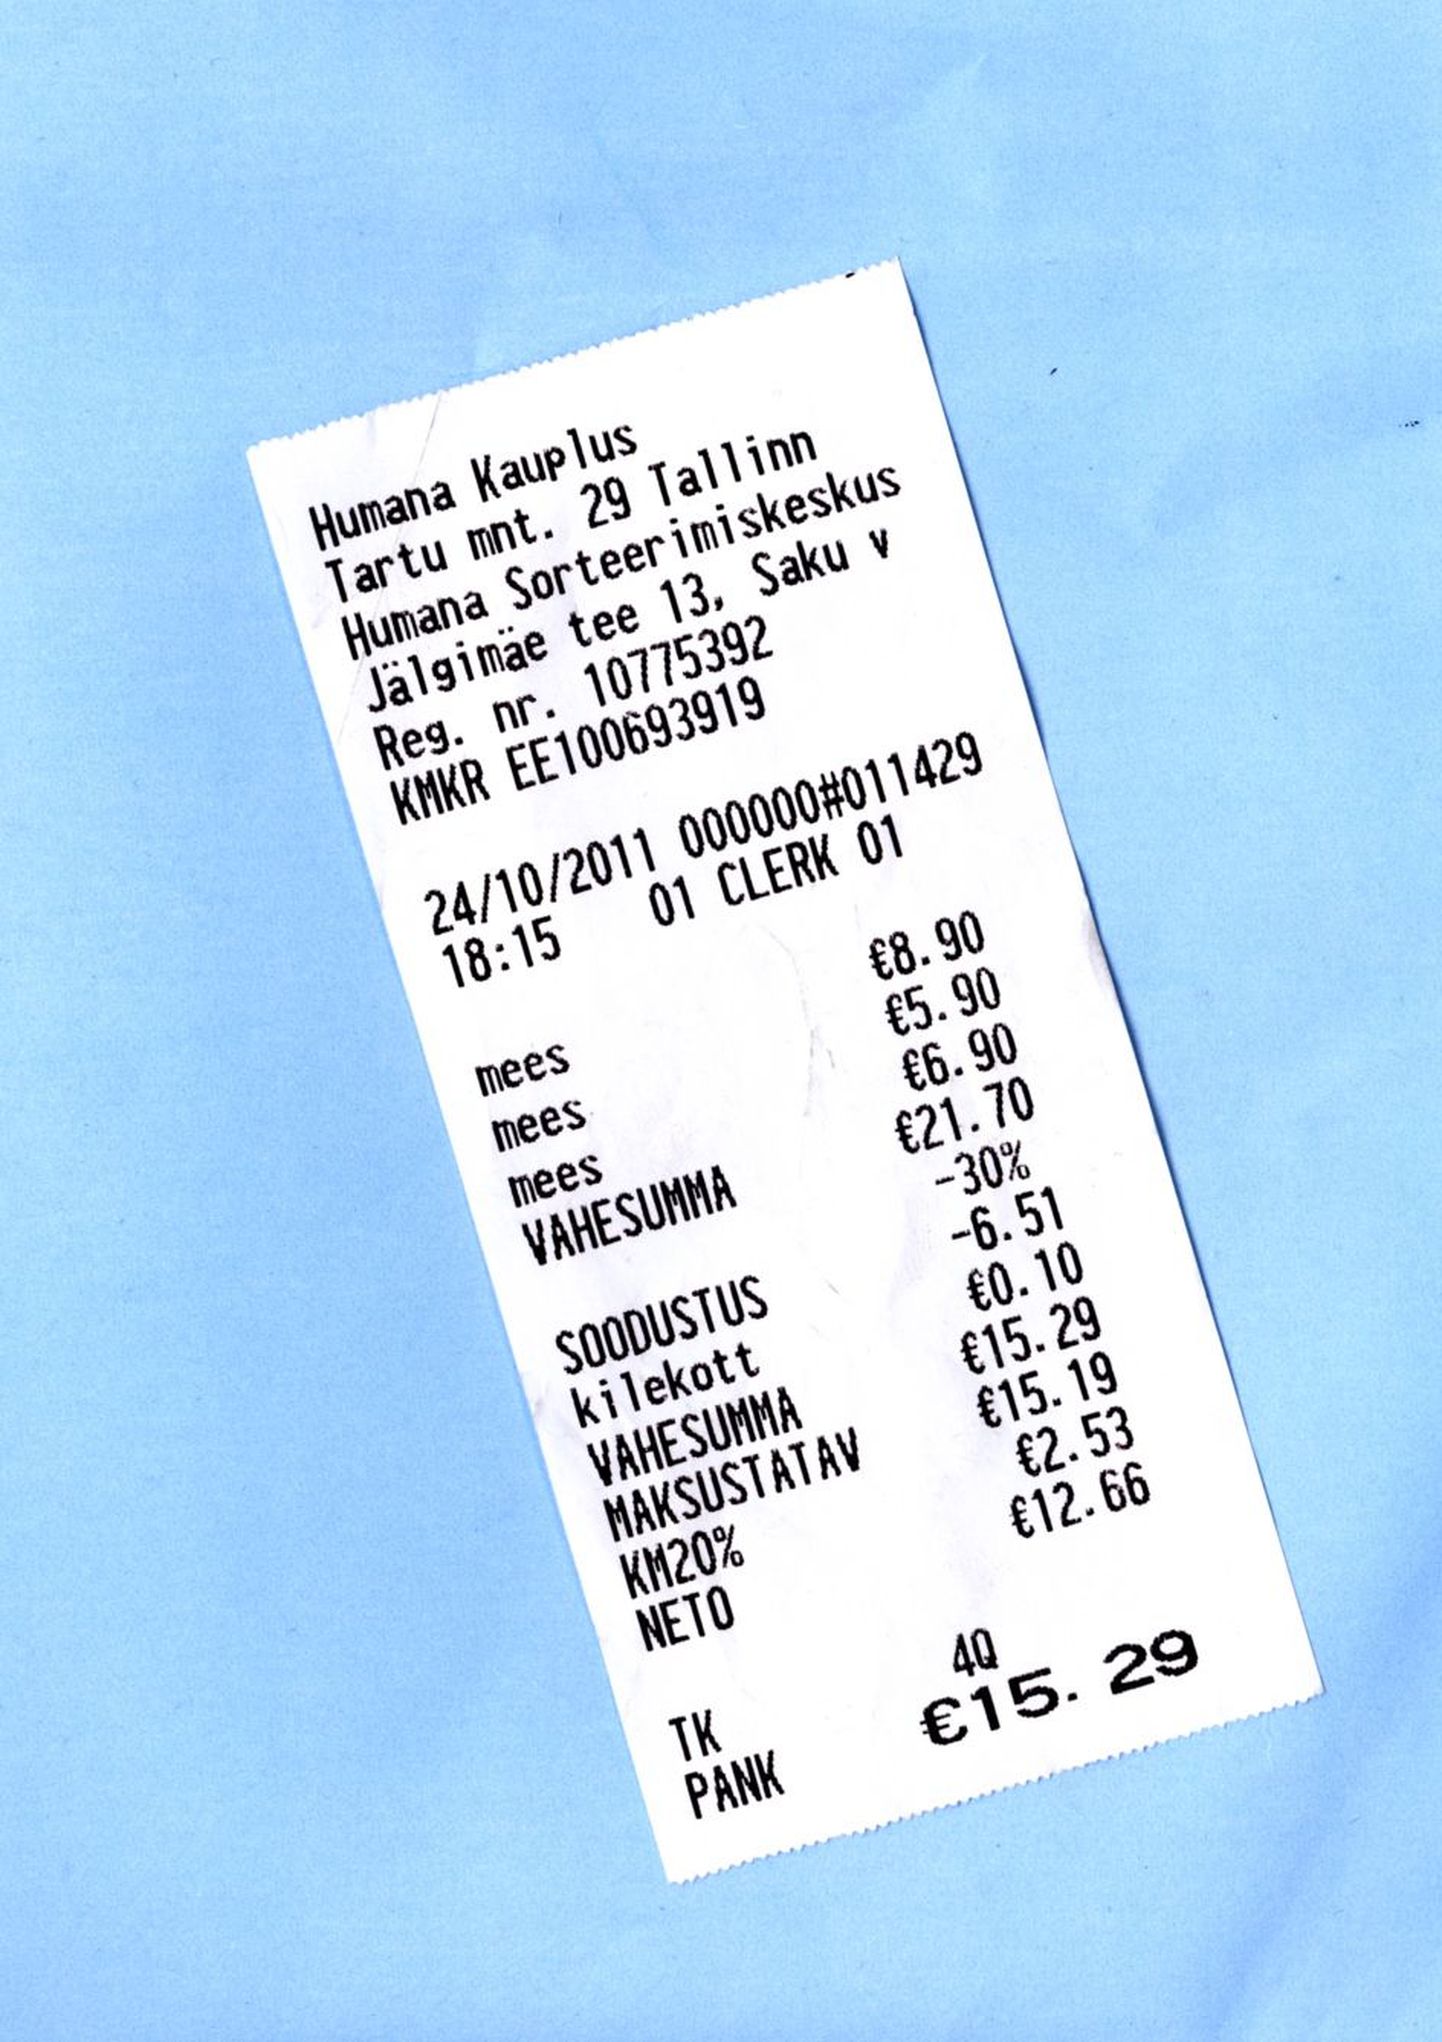 Humana poest saadud kummalise tšeki järgi ei maksa kolm meest sugugi rohkem kui 15,29 eurot.